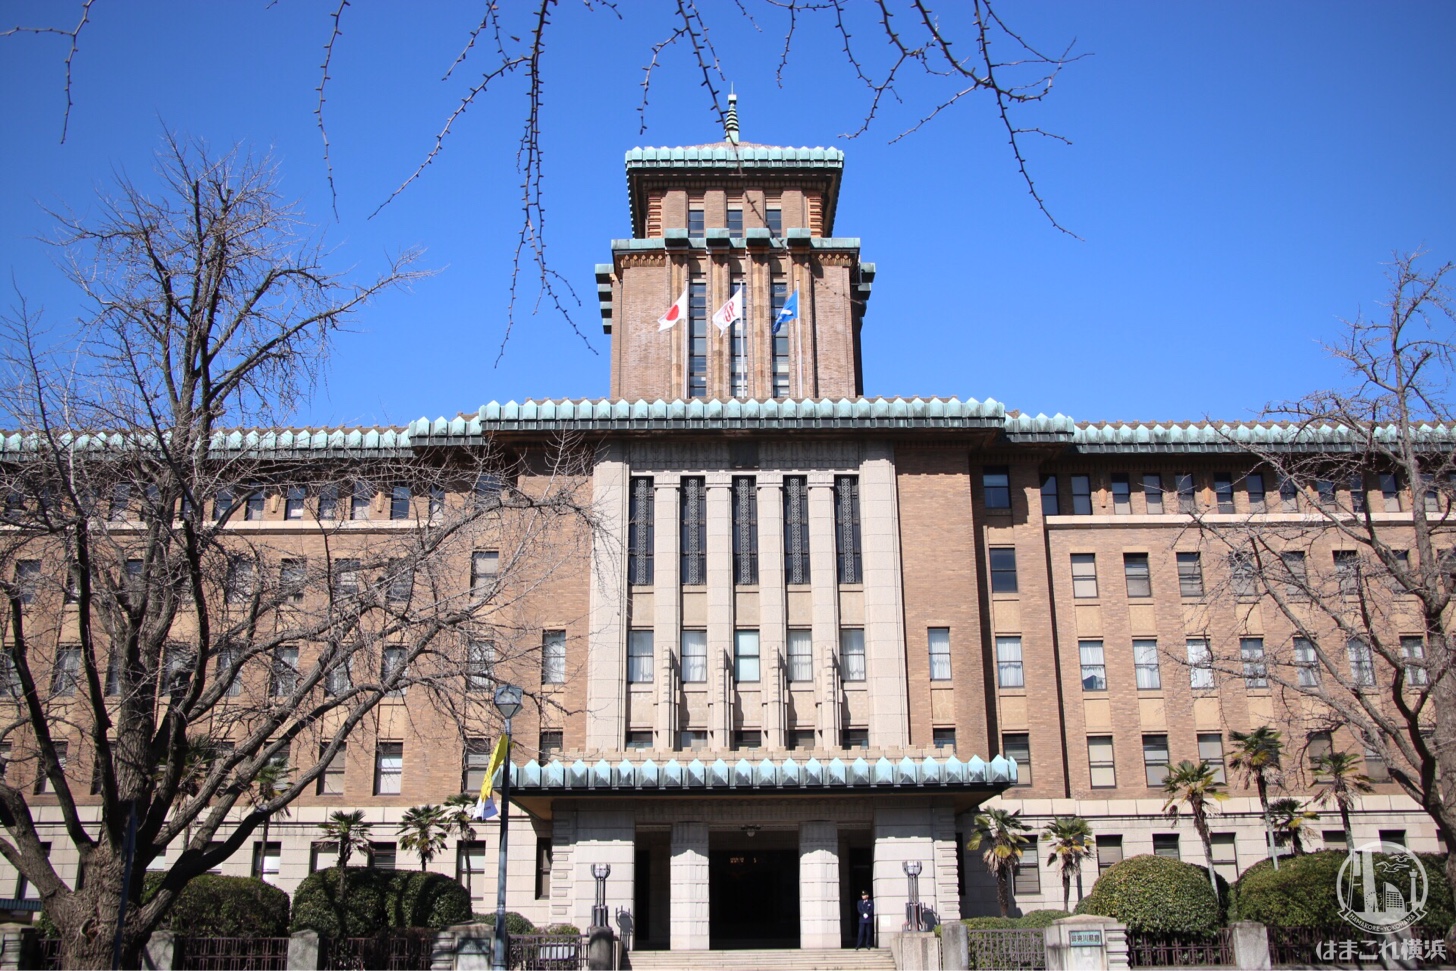 神奈川県庁本庁舎 正面玄関